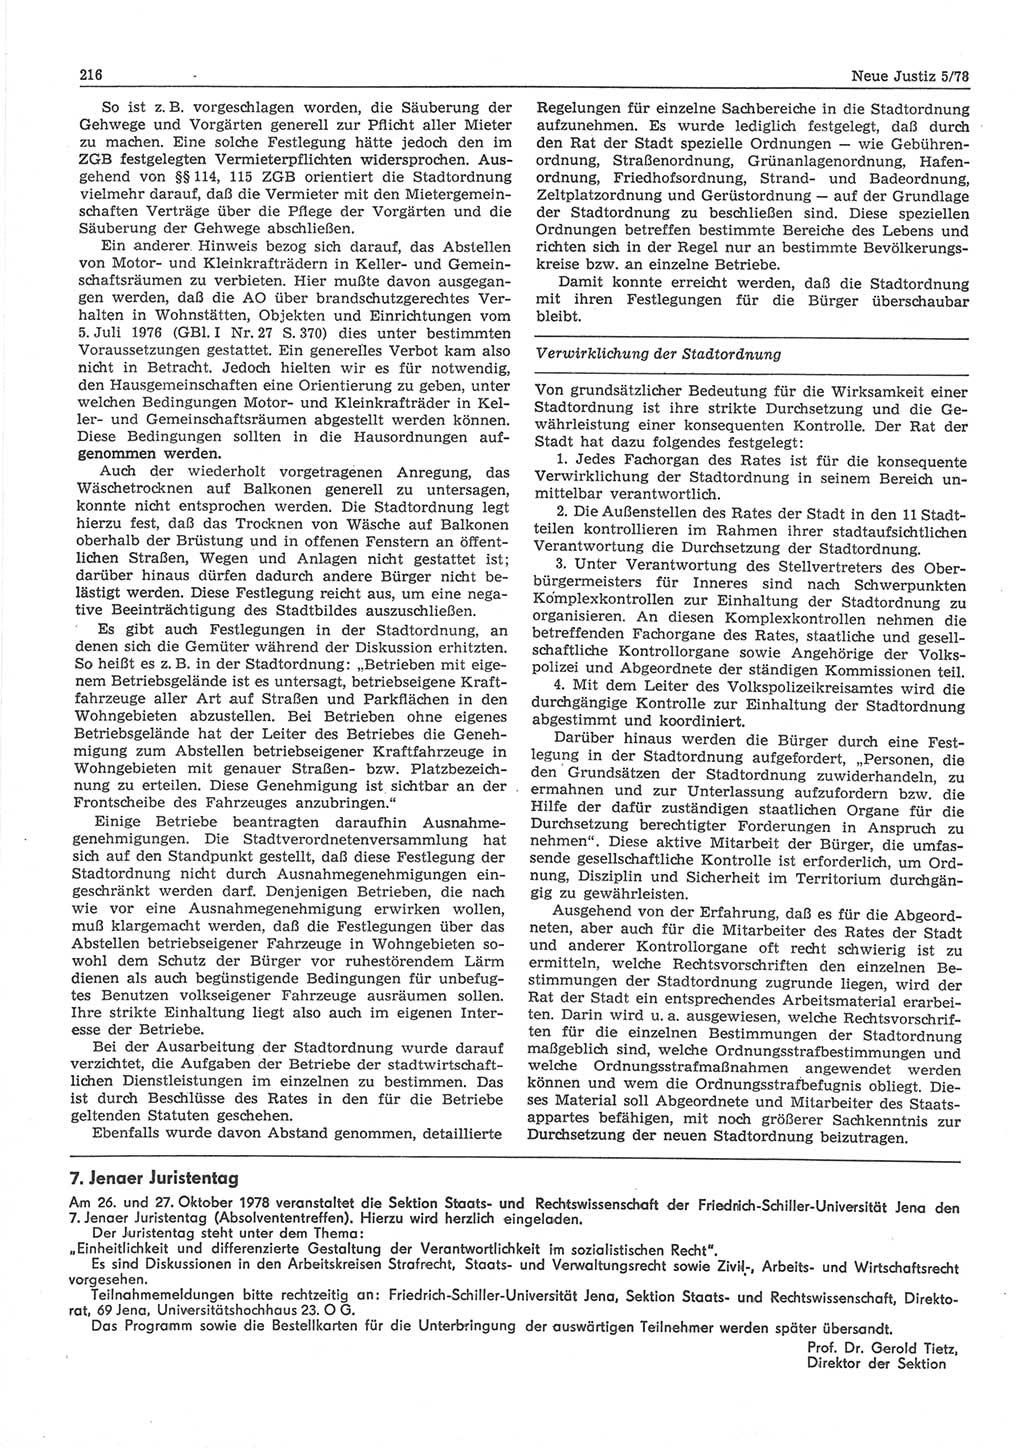 Neue Justiz (NJ), Zeitschrift für sozialistisches Recht und Gesetzlichkeit [Deutsche Demokratische Republik (DDR)], 32. Jahrgang 1978, Seite 216 (NJ DDR 1978, S. 216)